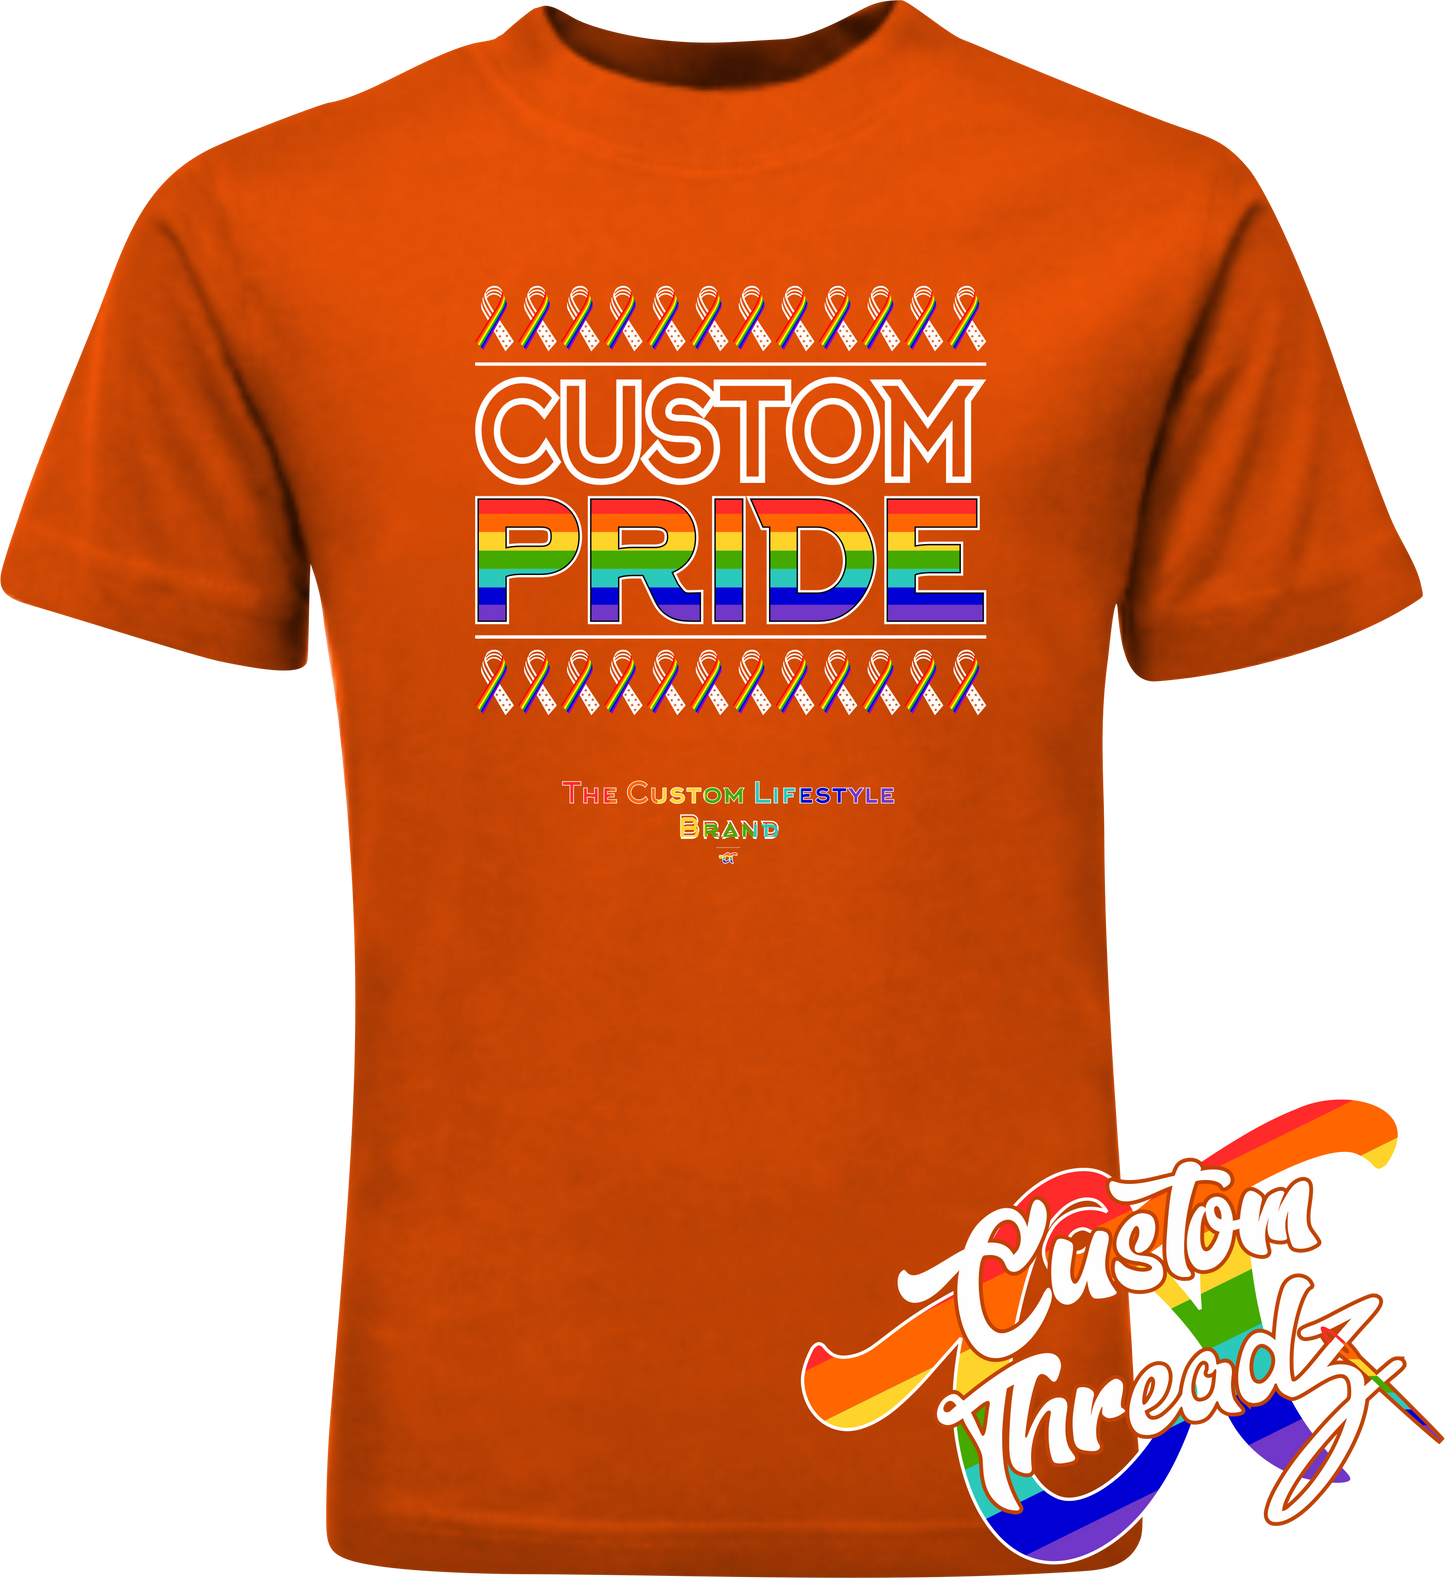 orange tee with custom pride rainbow pride flag DTG printed design